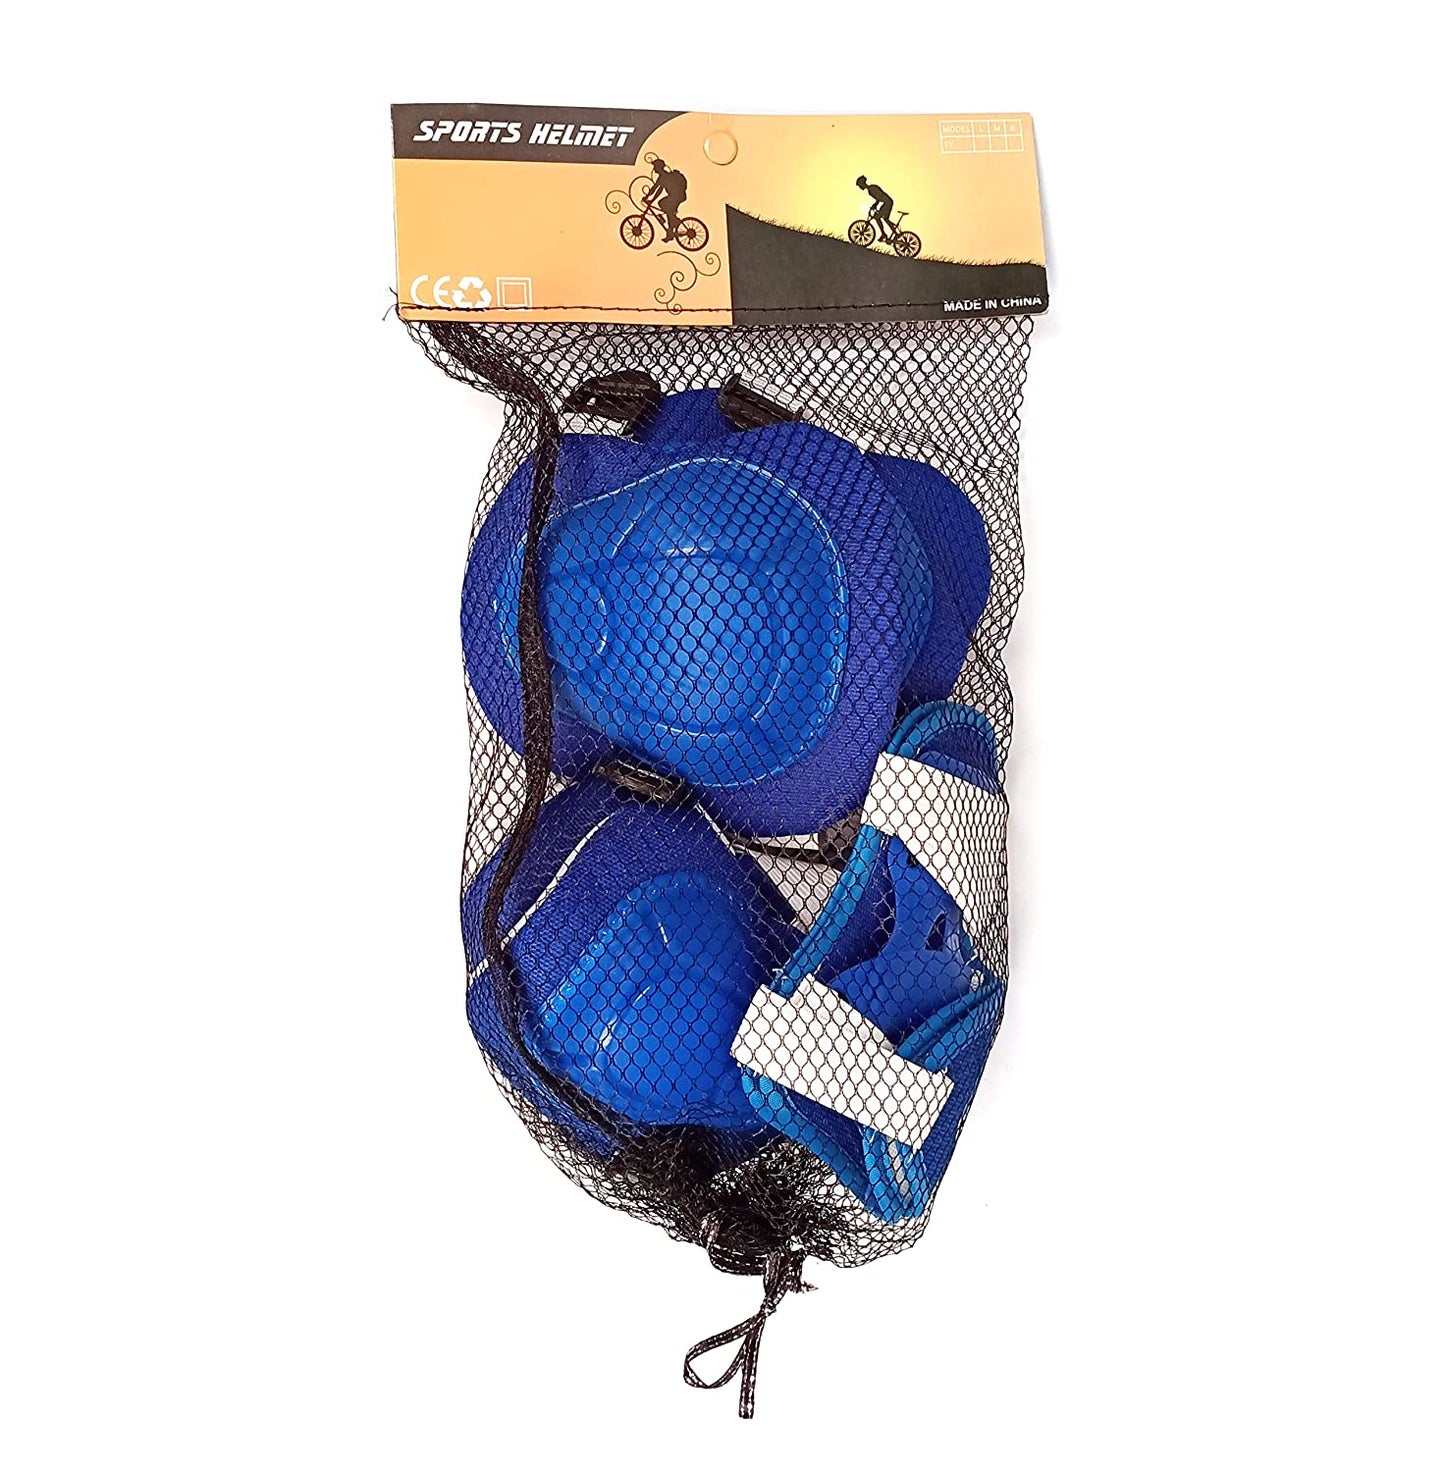 Prokick Protective Set - 2pcs knee pad, 2pcs elbow pad, 2pcs wrist pad, Blue - Best Price online Prokicksports.com